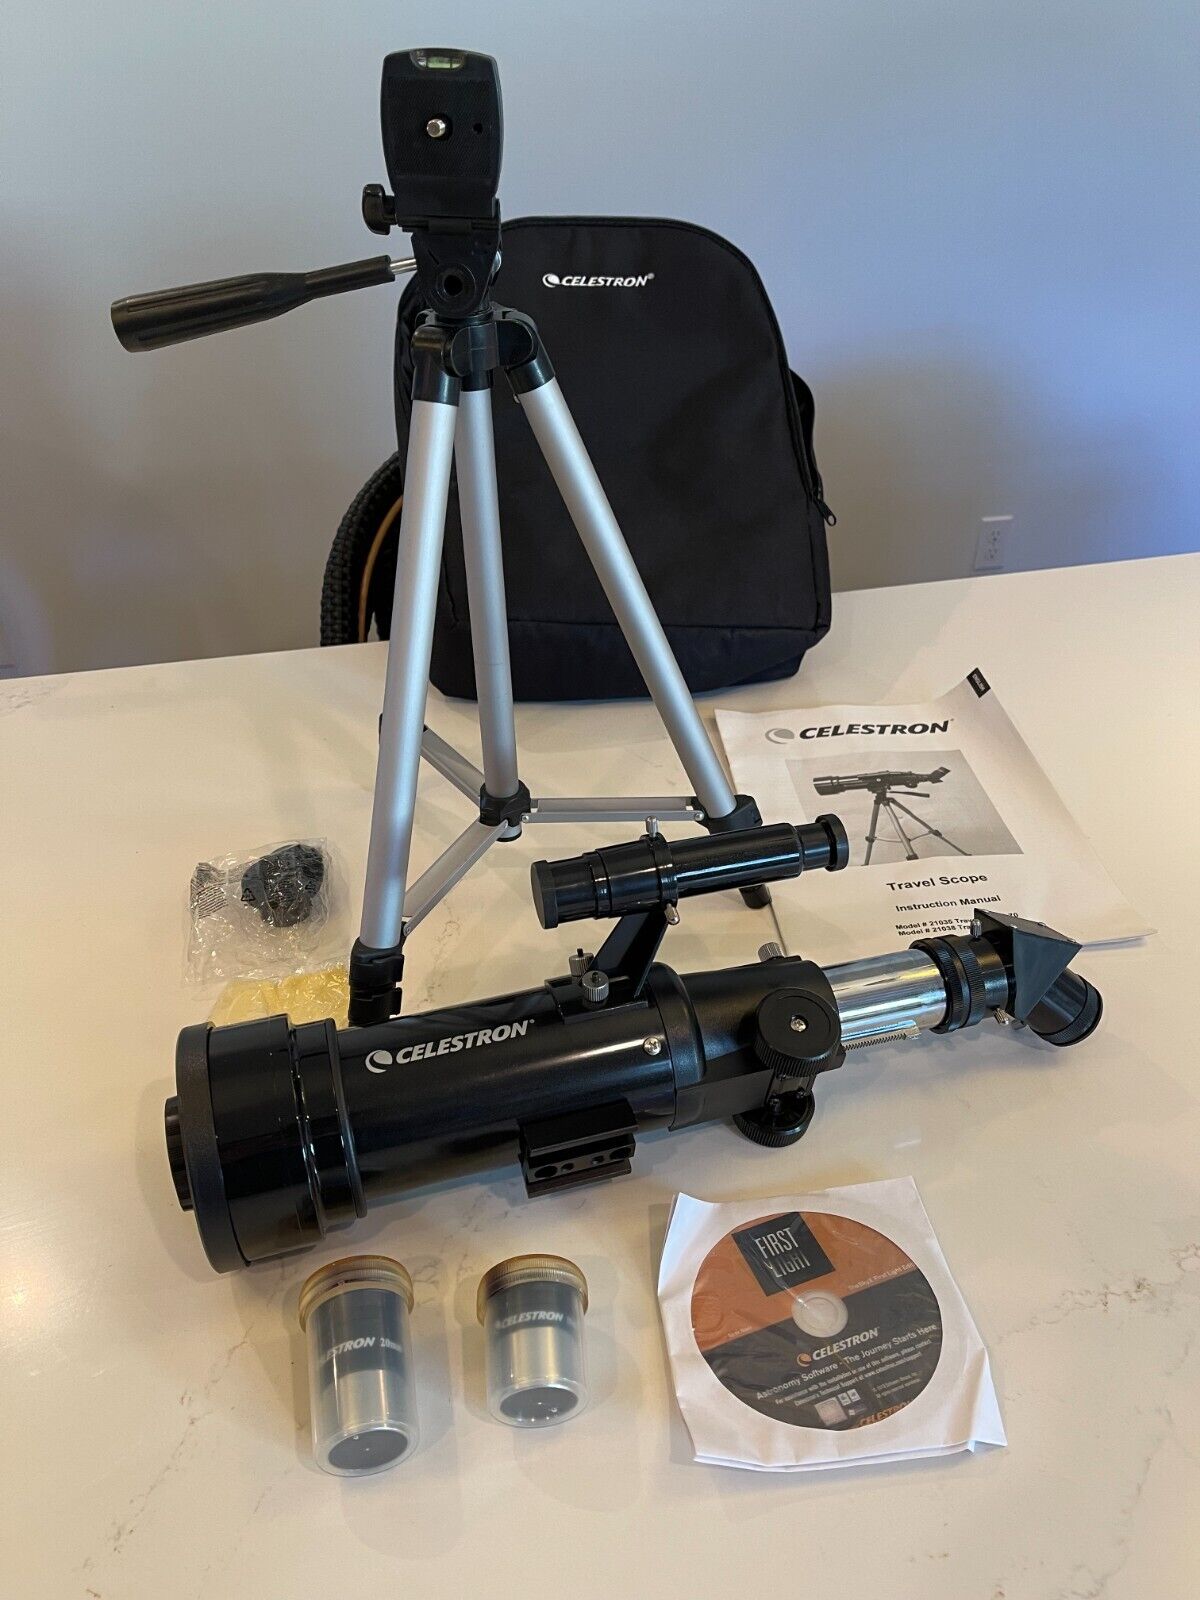 Celestron 21035 Portable 70mm Travel Scope Refractor - Black w/ pack & 2 lenses